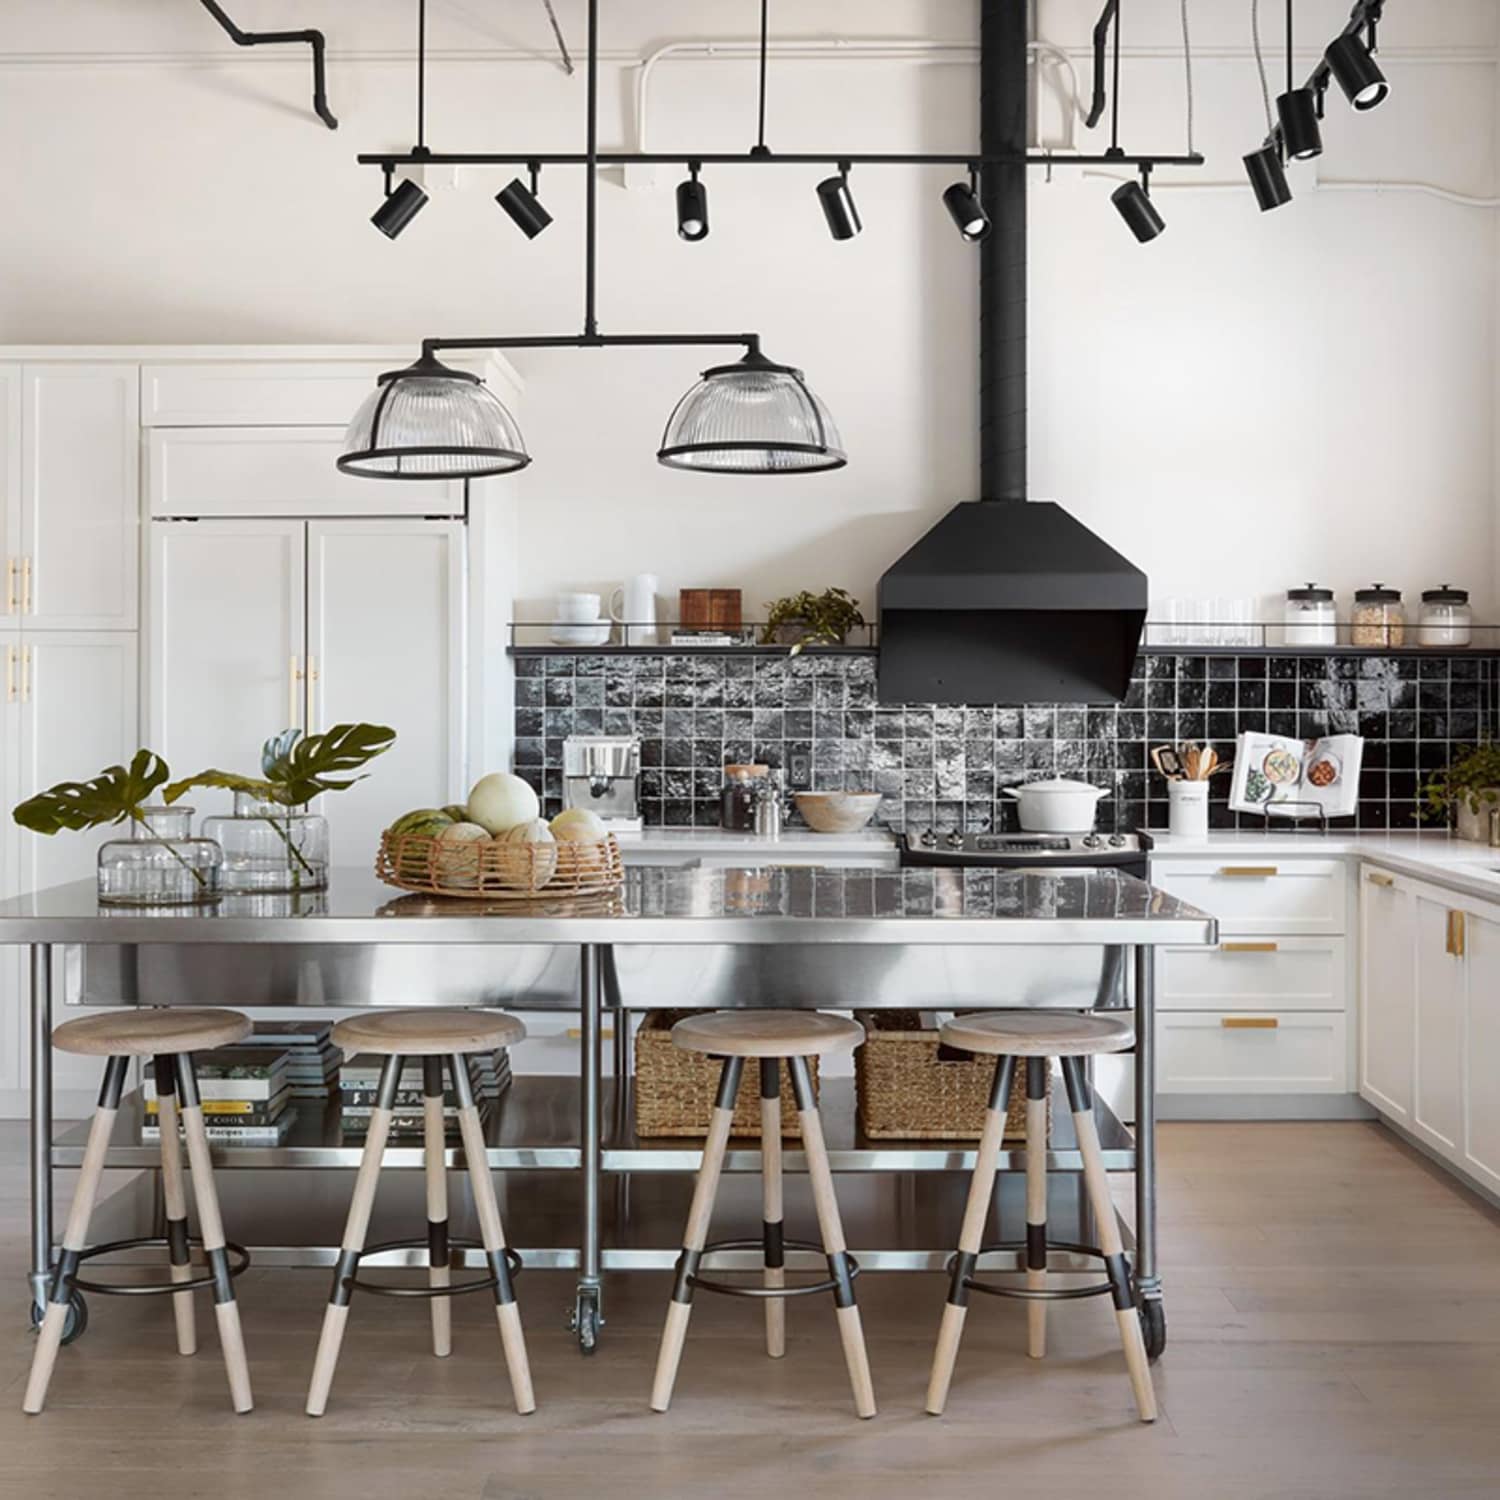 Best Fixer Upper Kitchen Designs From Joanna Gaines